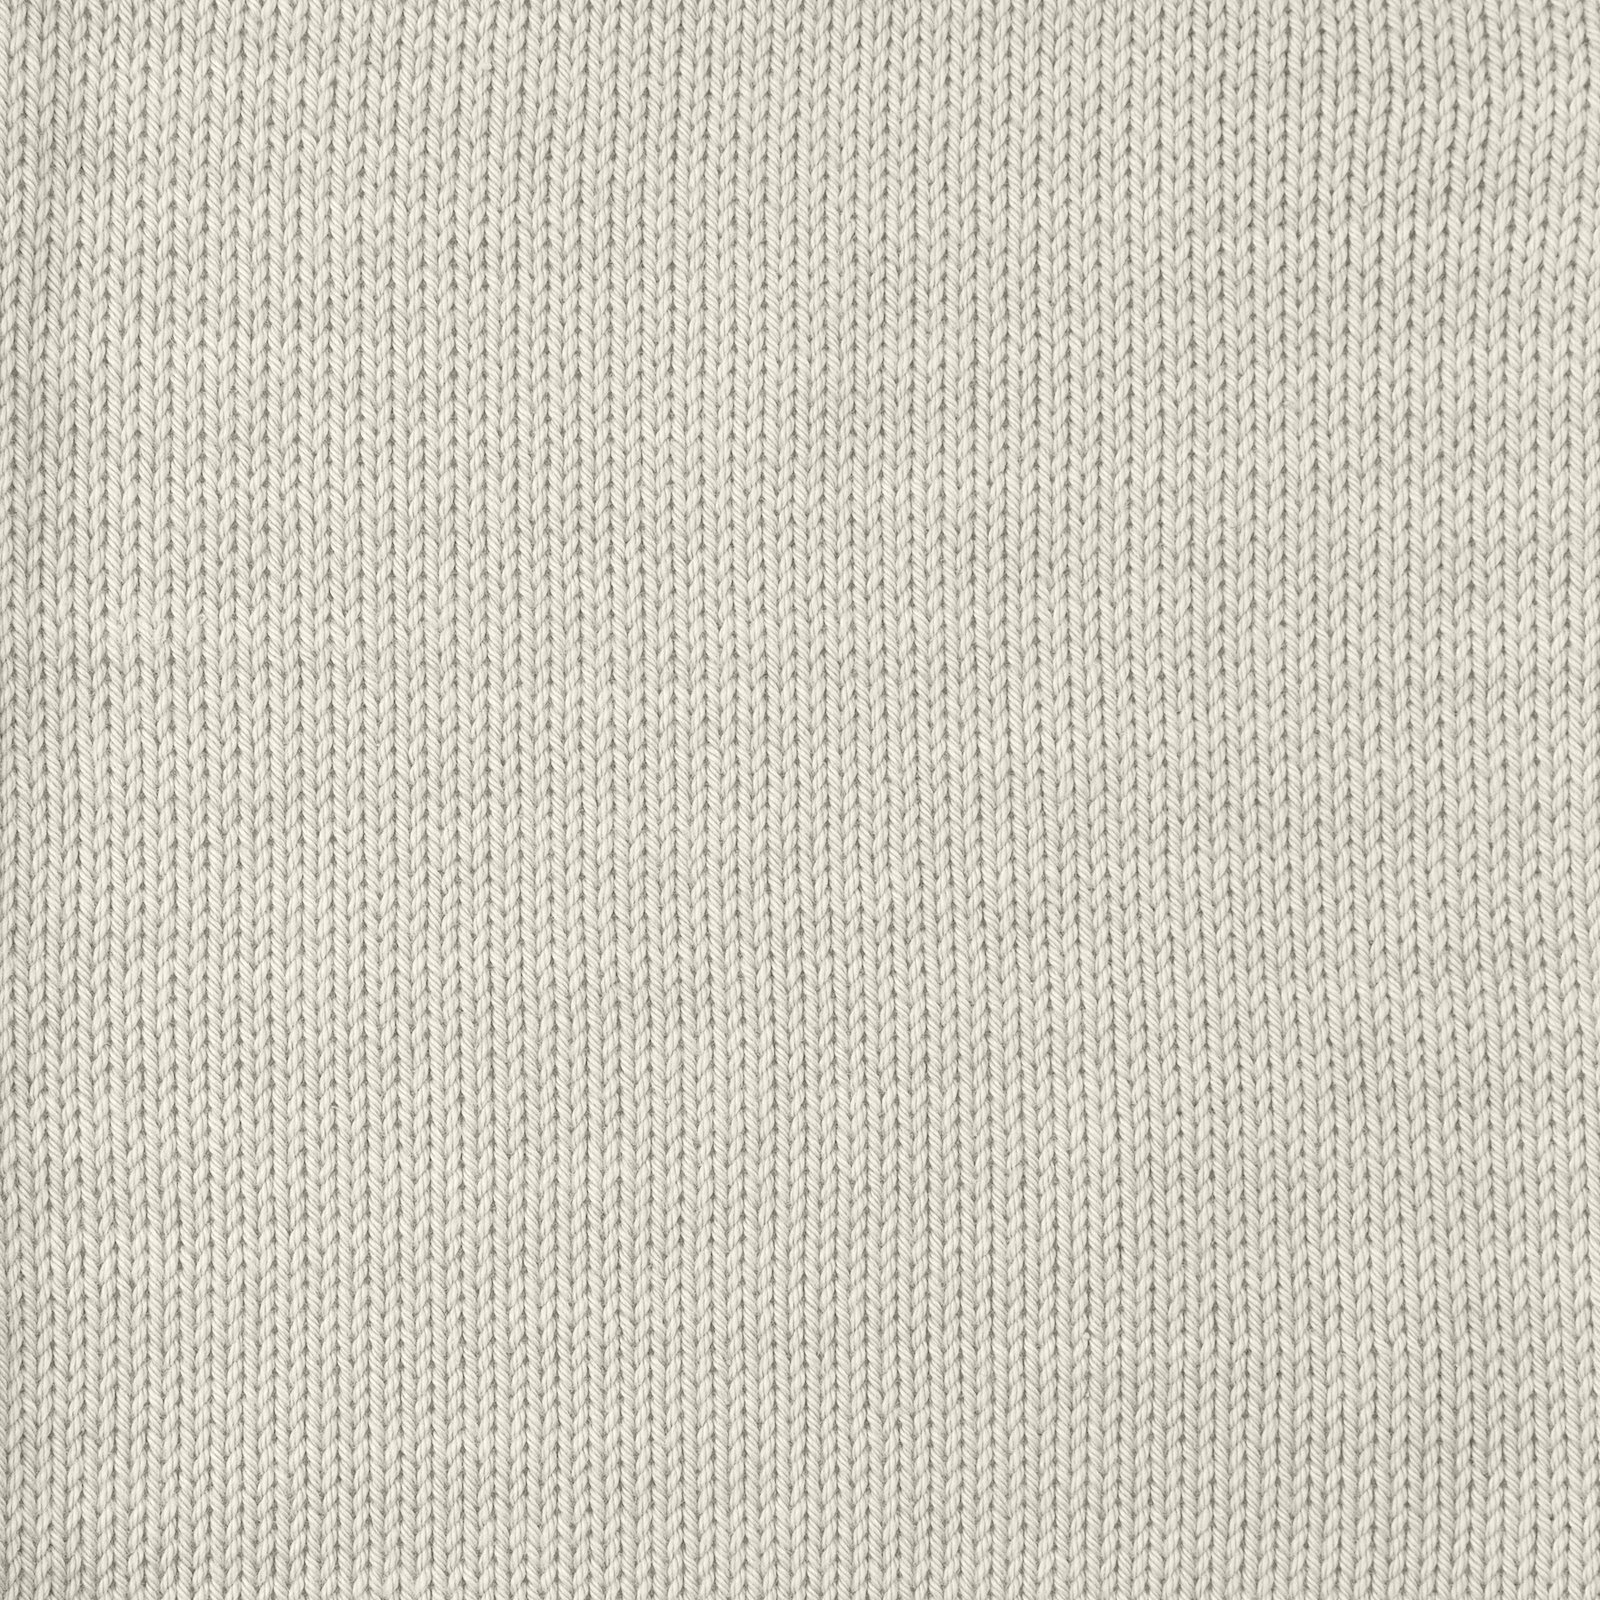 FRAYA, 100% cotton 8/4  yarn  "Colourful", light grey 90060040_sskit